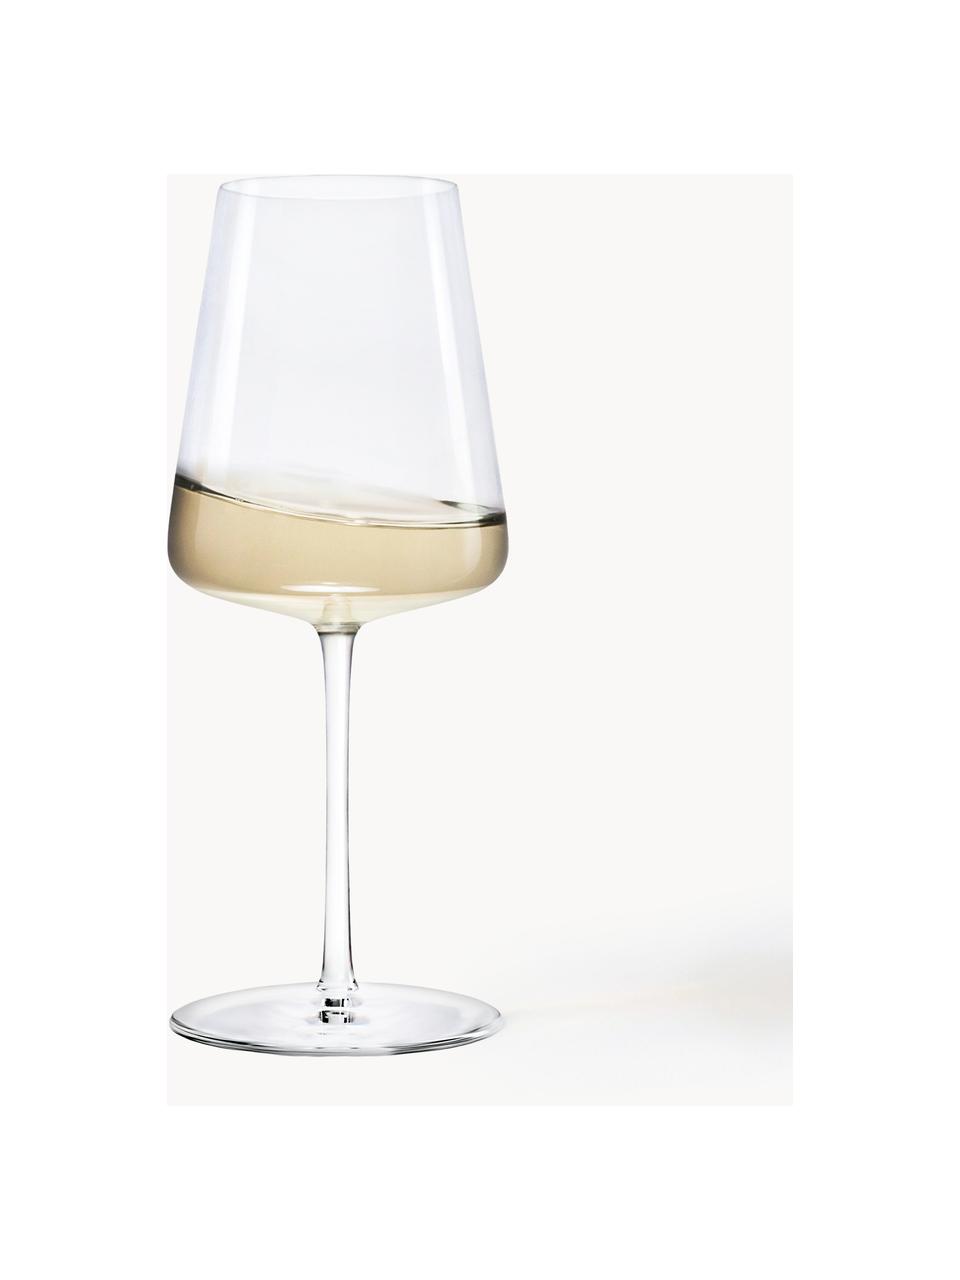 Krištáľové poháre na biele víno Power, 6 ks, Krištáľové sklo

Vneste lesk krištáľového skla na váš jedálenský stôl! Sklo je výnimočne priehľadné a ťažké, čo znamená, že pôsobí hodnotne a zároveň dobre vyzerá. Navyše jemné tvary robia z každého kusu špeciálny kúsok, ktorý je praktický aj krásny., Priehľadná, Ø 9 x V 21 cm, 400 ml